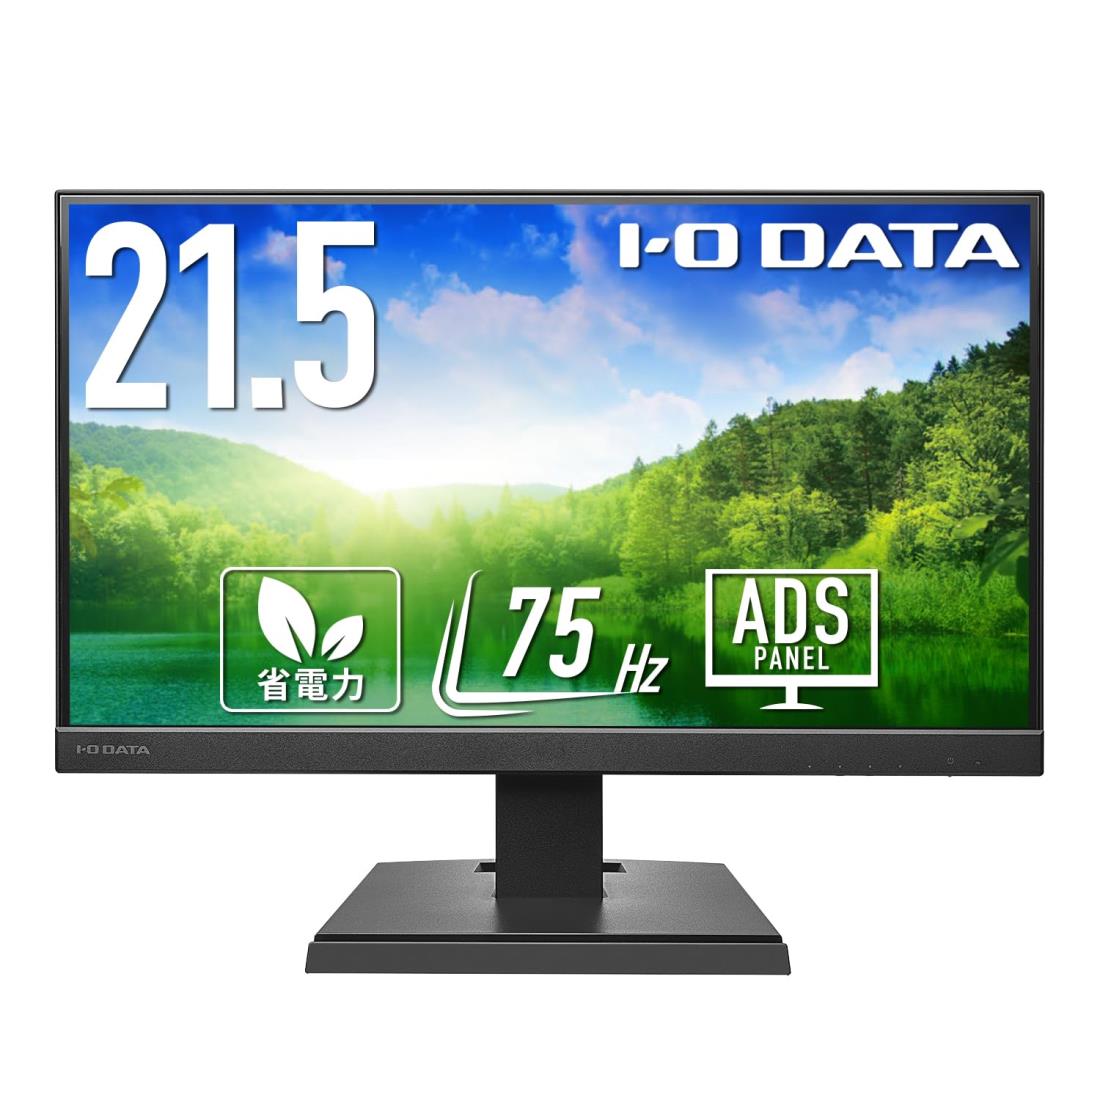 アイ・オー・データ IODATA モニター 21.5インチ ブラック ADSパネル 非光沢 省電力 (HDMI/アナログRGB/スピーカー付/VESA対応/日本メーカー) EX-A221DB